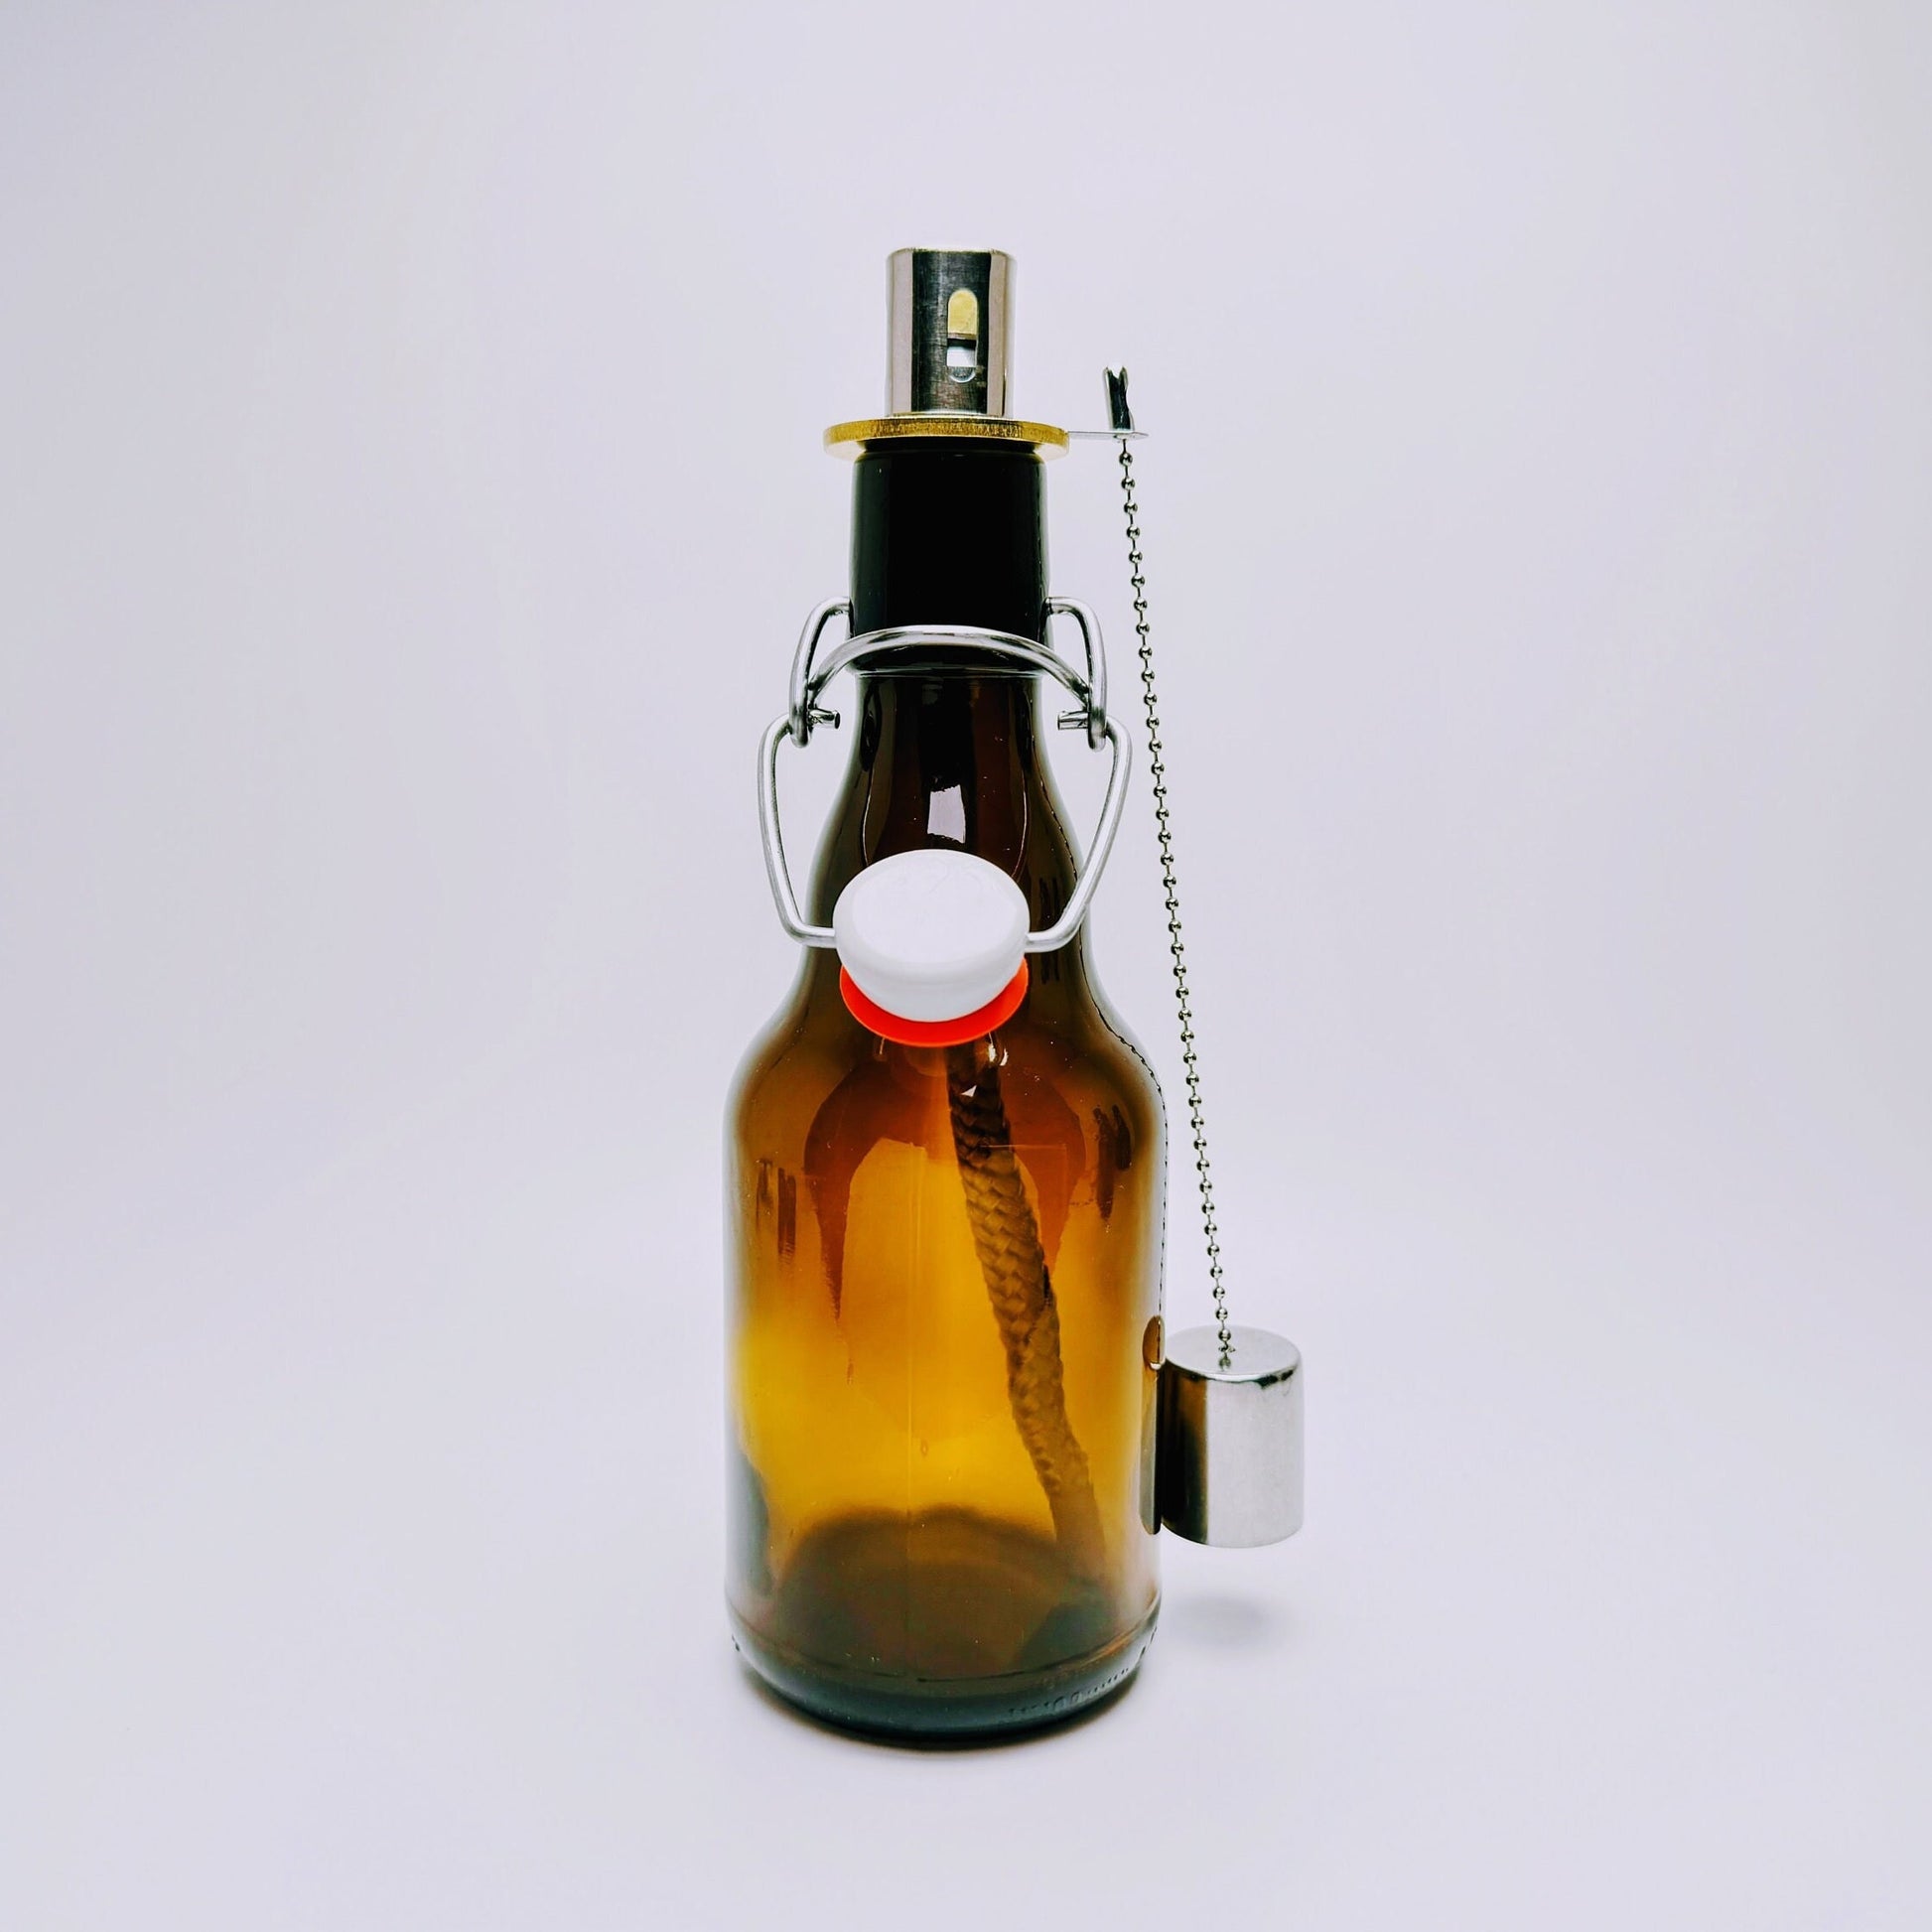 Öllampe aus Bier-Bügelflasche - Handgemacht - Upcycling - Windlicht für Balkon & Garten